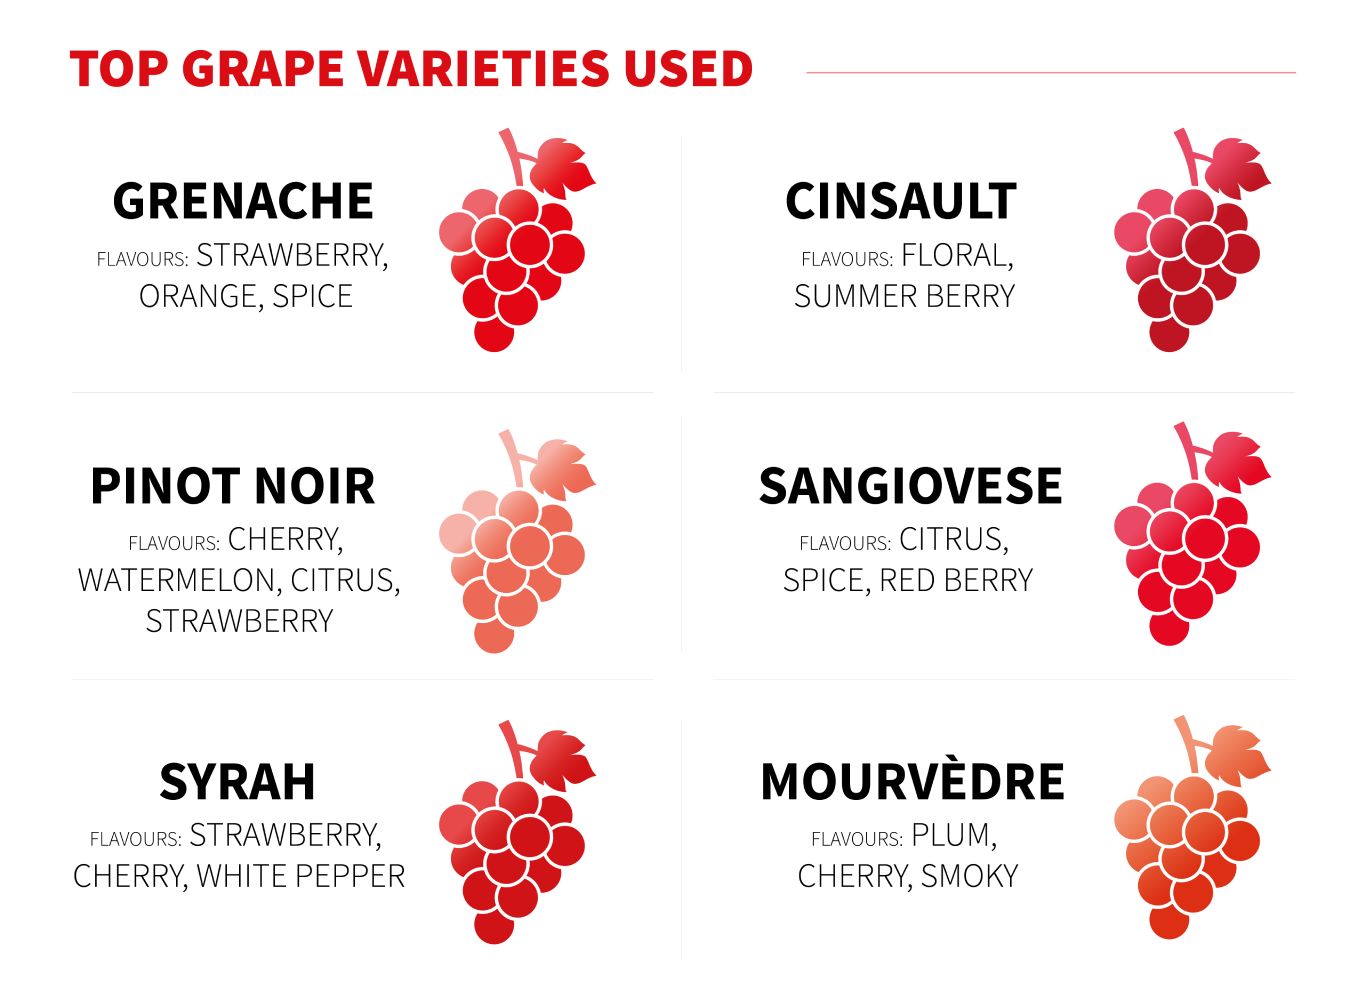 Infographic of Top Grape Varieties Used in Rose Wine by Virgin Wines